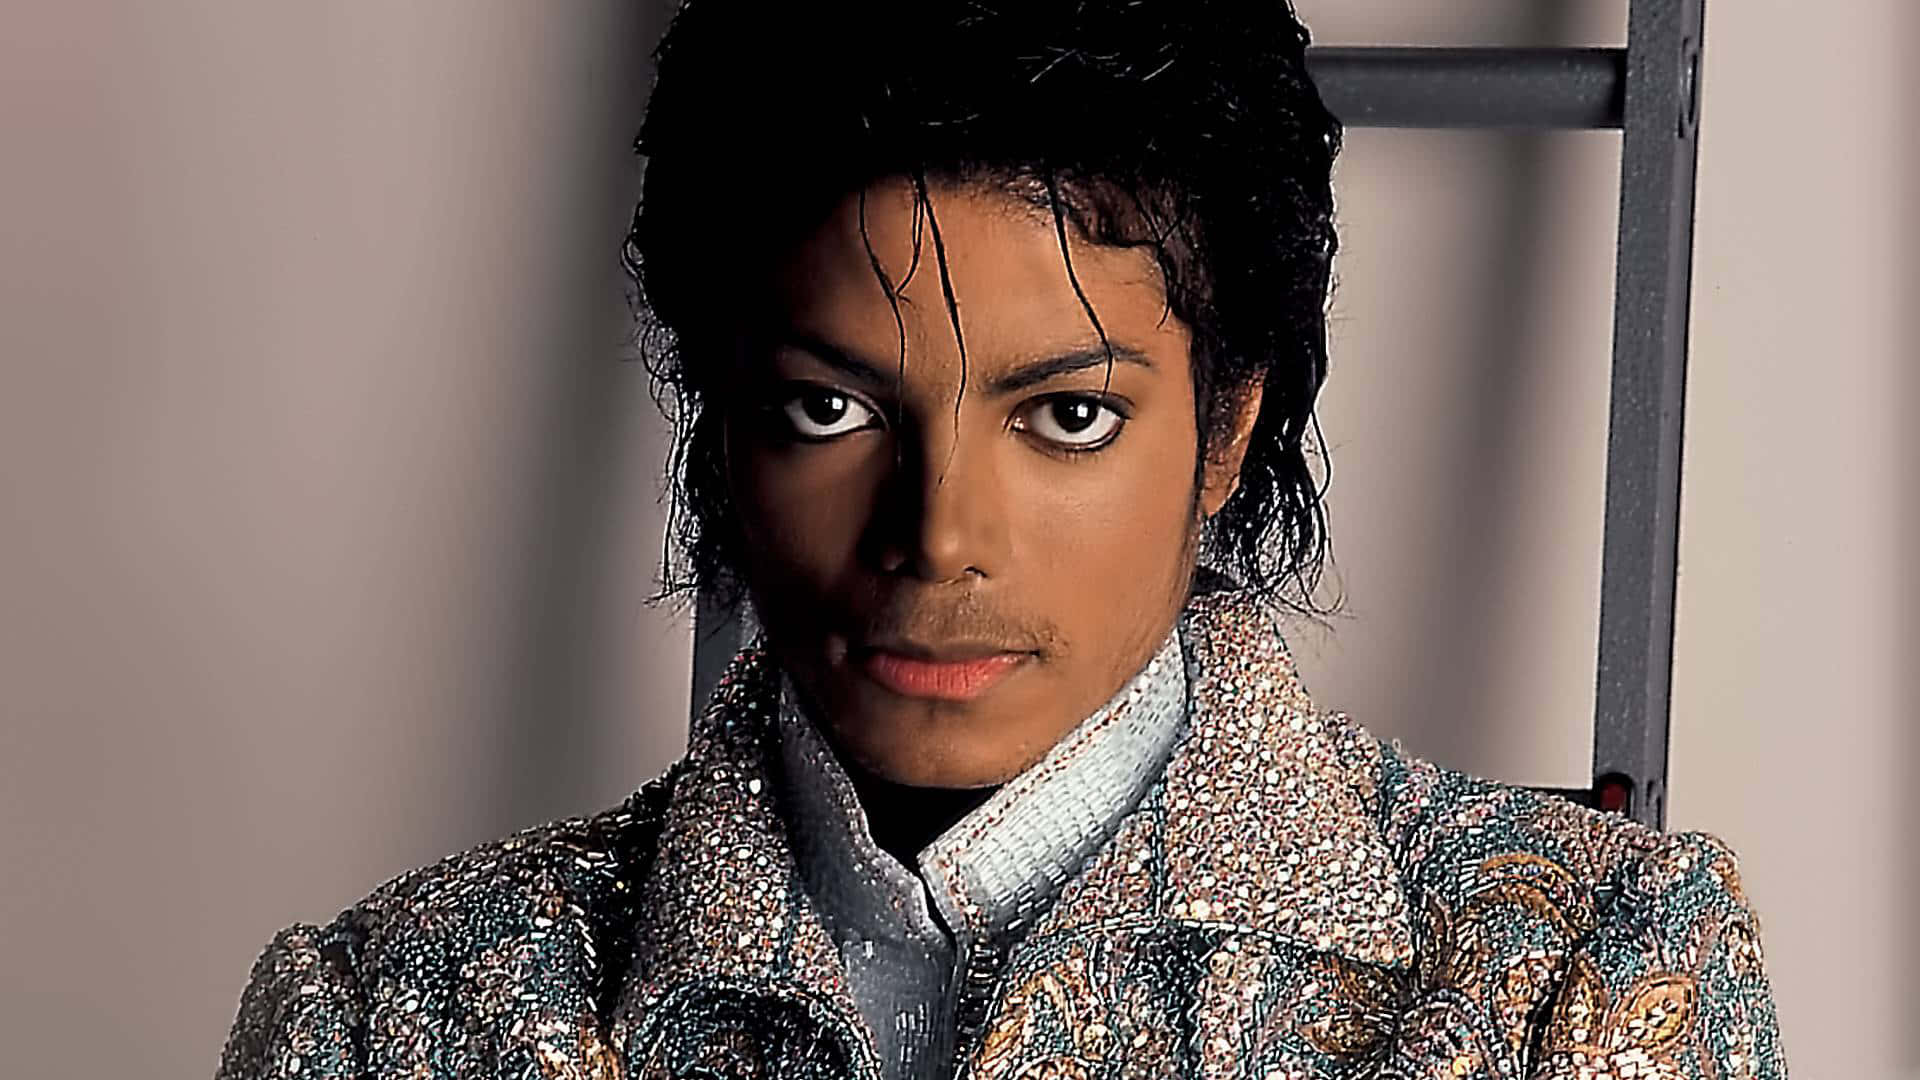 Billeder af Michael Jackson på en sort baggrund.